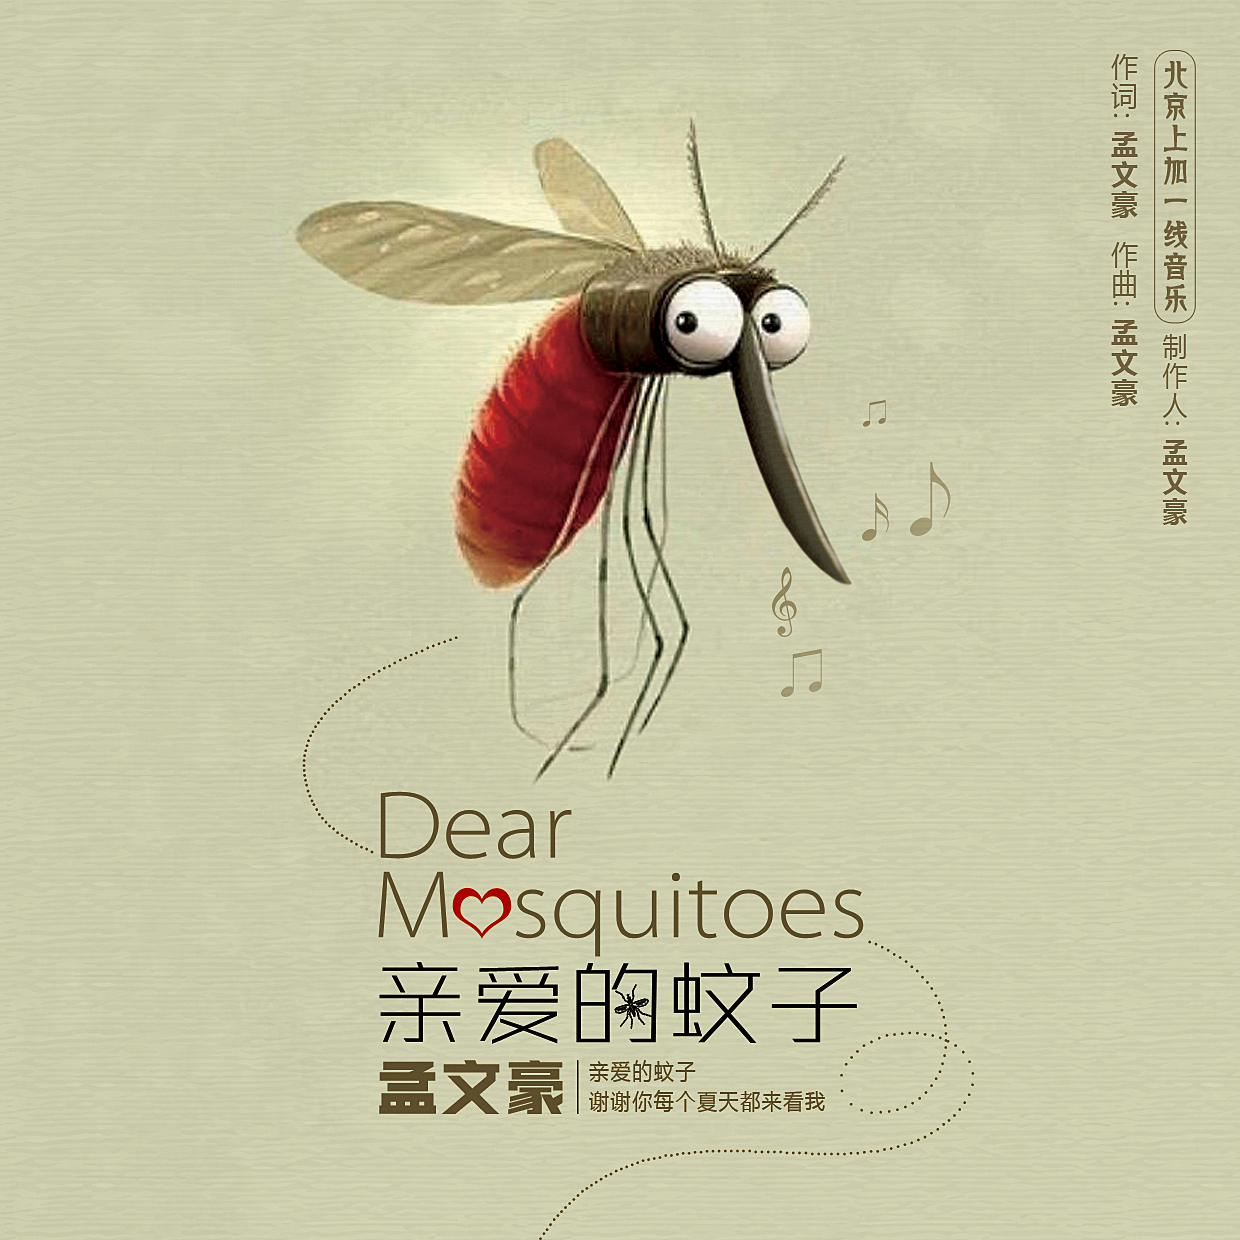 孟文豪新单曲《亲爱的蚊子》来袭 来听另类告白